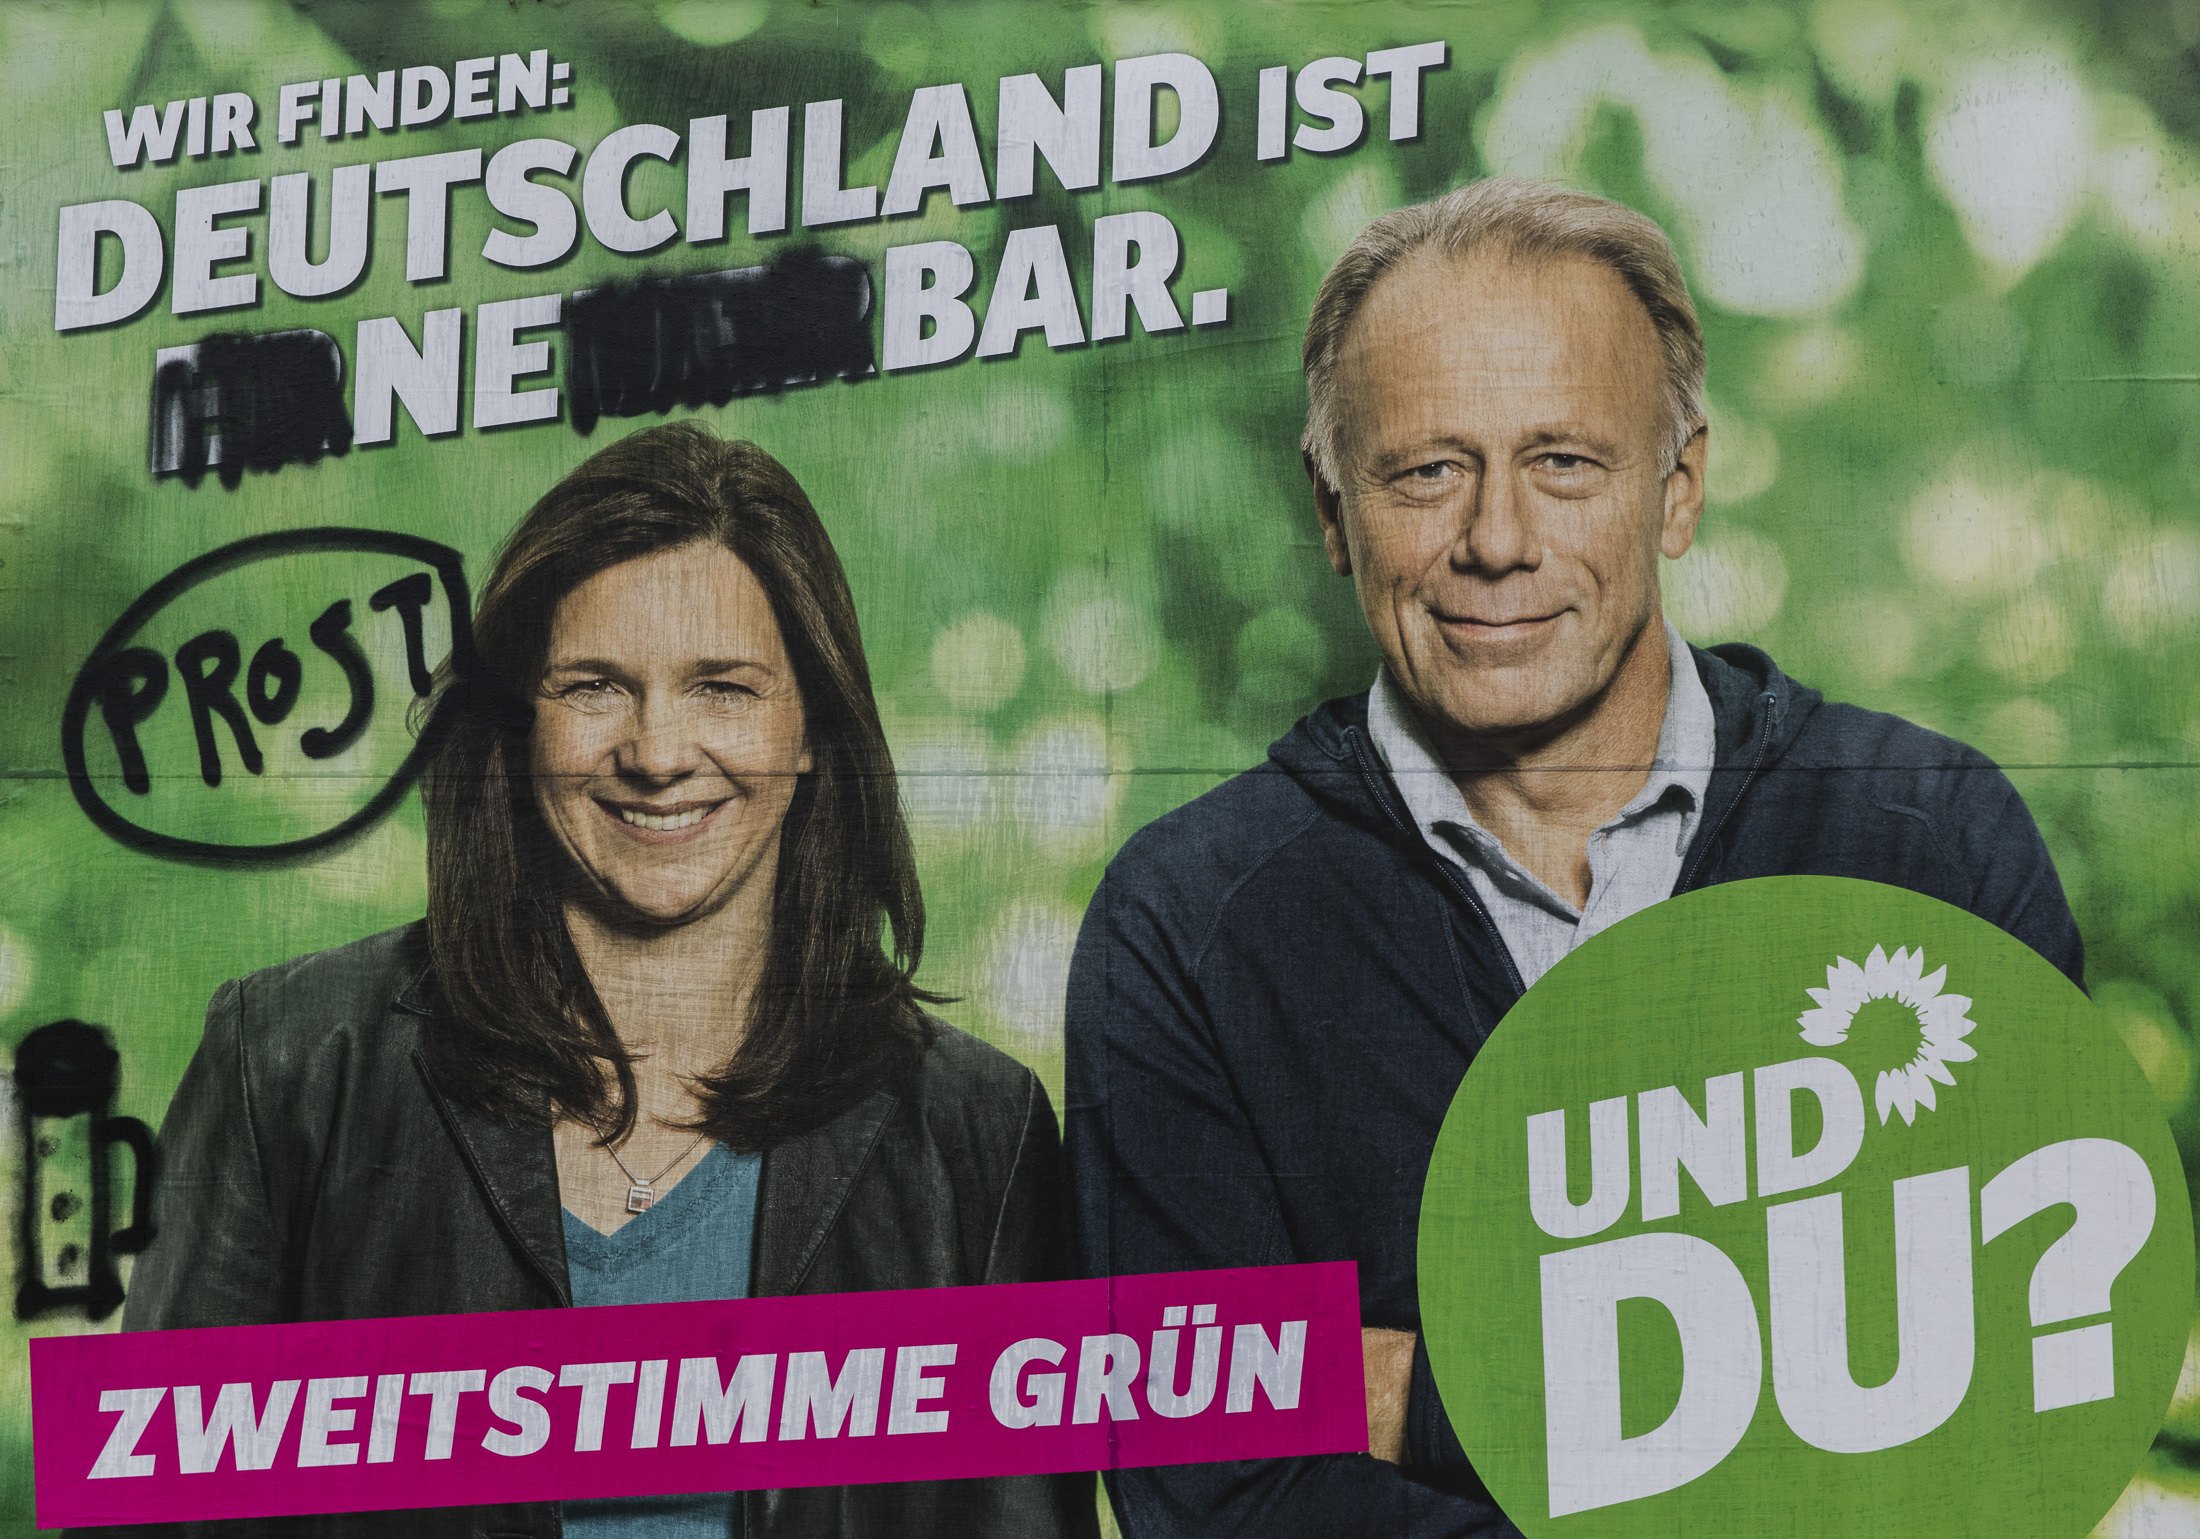 Η αφίσα του κόμματος των Πρασίνων: "Η Γερμανία είναι ανανεώσιμη" είναι το σύνθημα που μετατράπηκε σε "Η Γερμανία είναι ένα μπαρ"